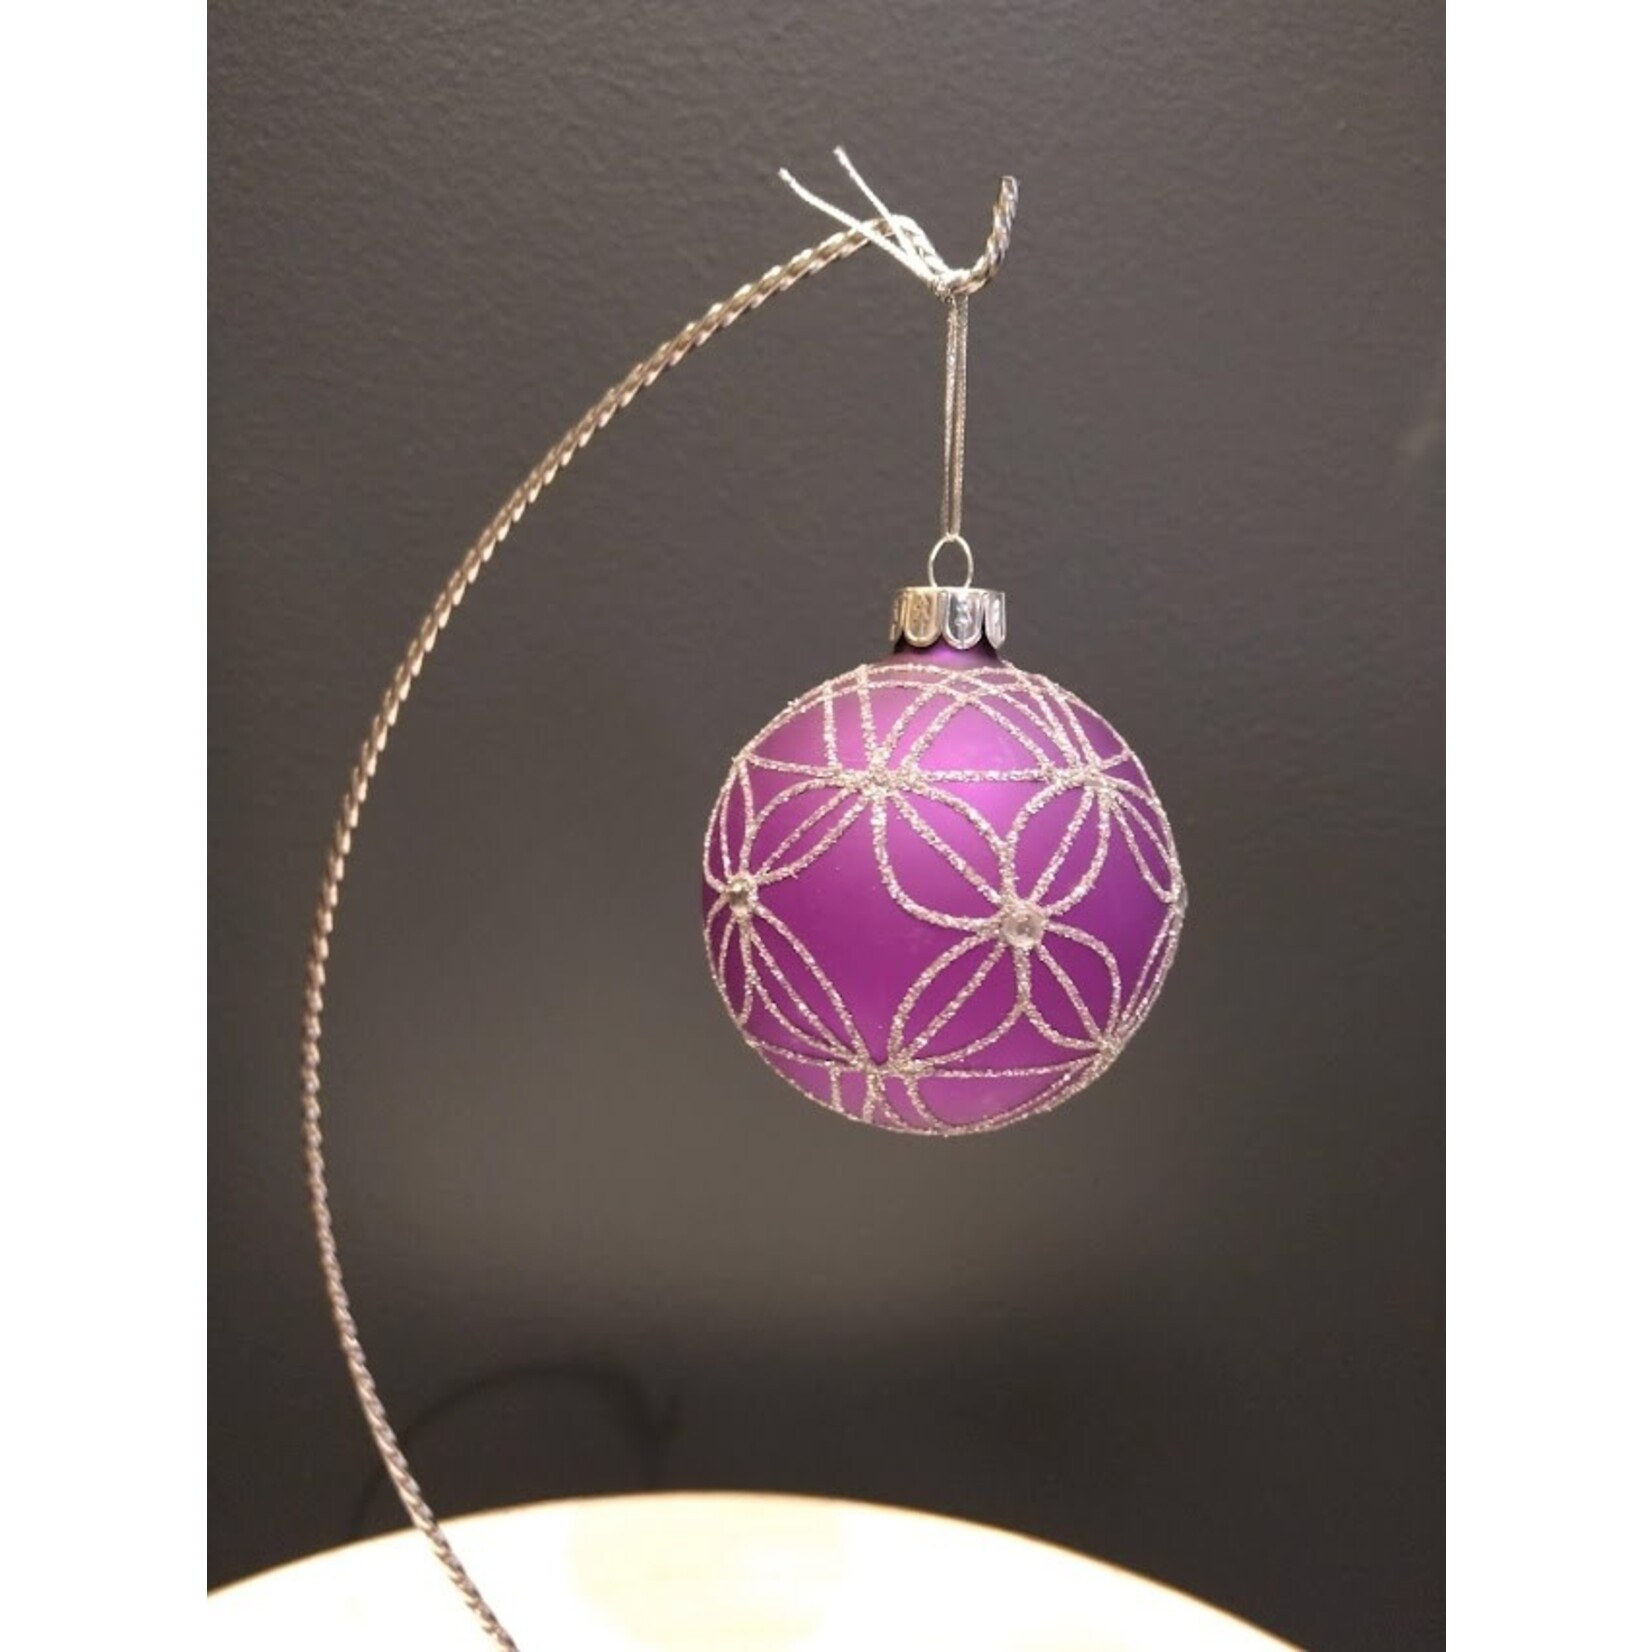 Two's Company Purple Ornament Small